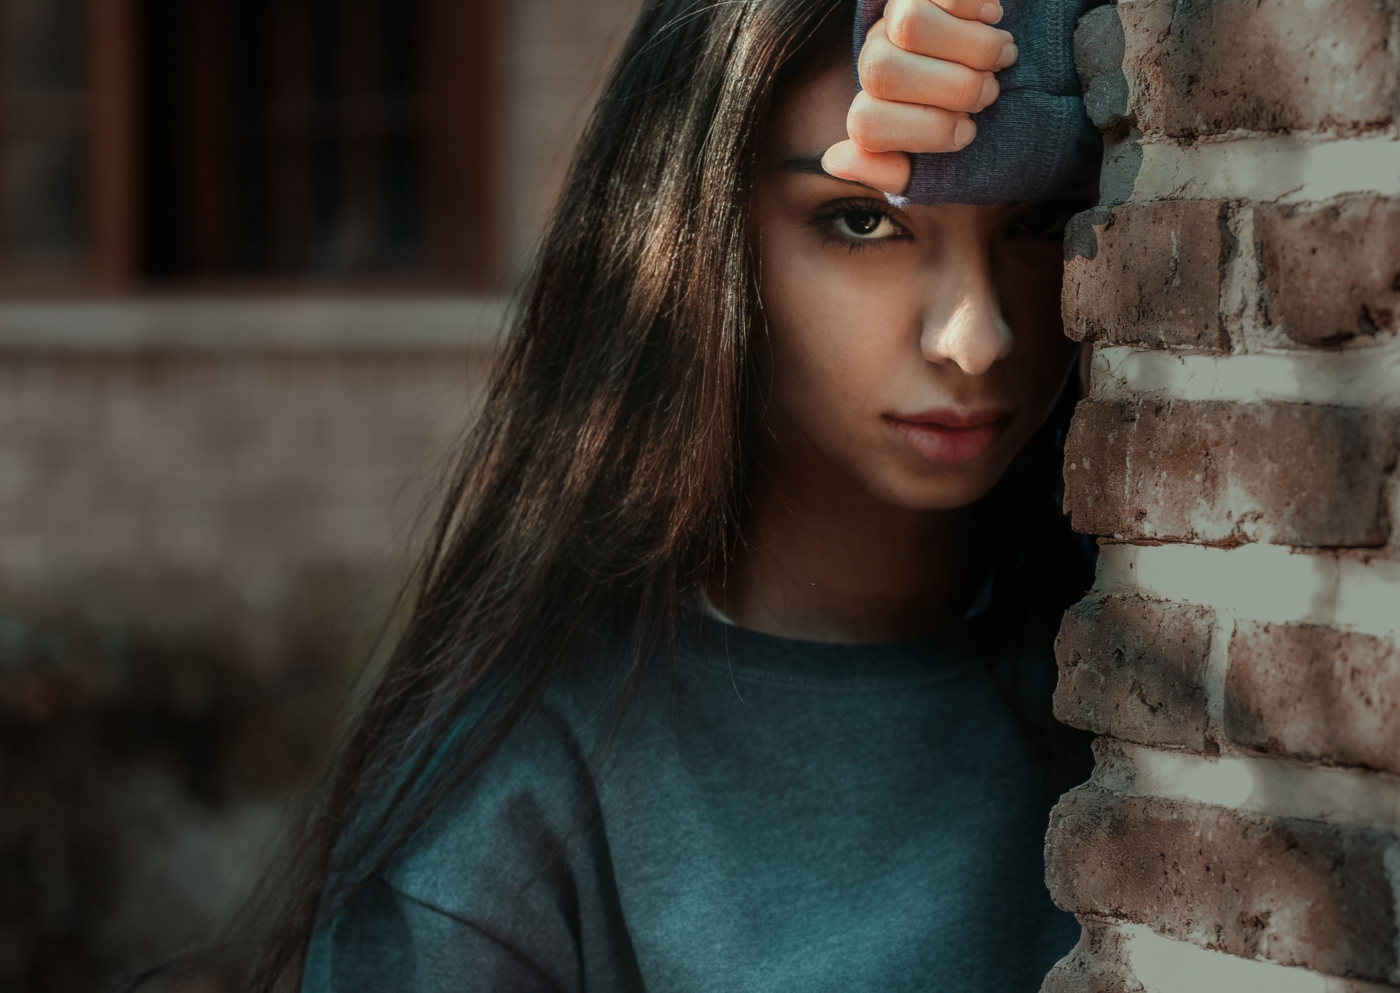 Eine junge Frau lehnt nachdenklich, wegen Prüfungsangst, an einer Backsteinmauer, ihr Gesicht teilweise verdeckt, während sie mit einer Hand über ihr Auge blickt, was ein Gefühl von Nachdenklichkeit oder Neugier ausdrückt.